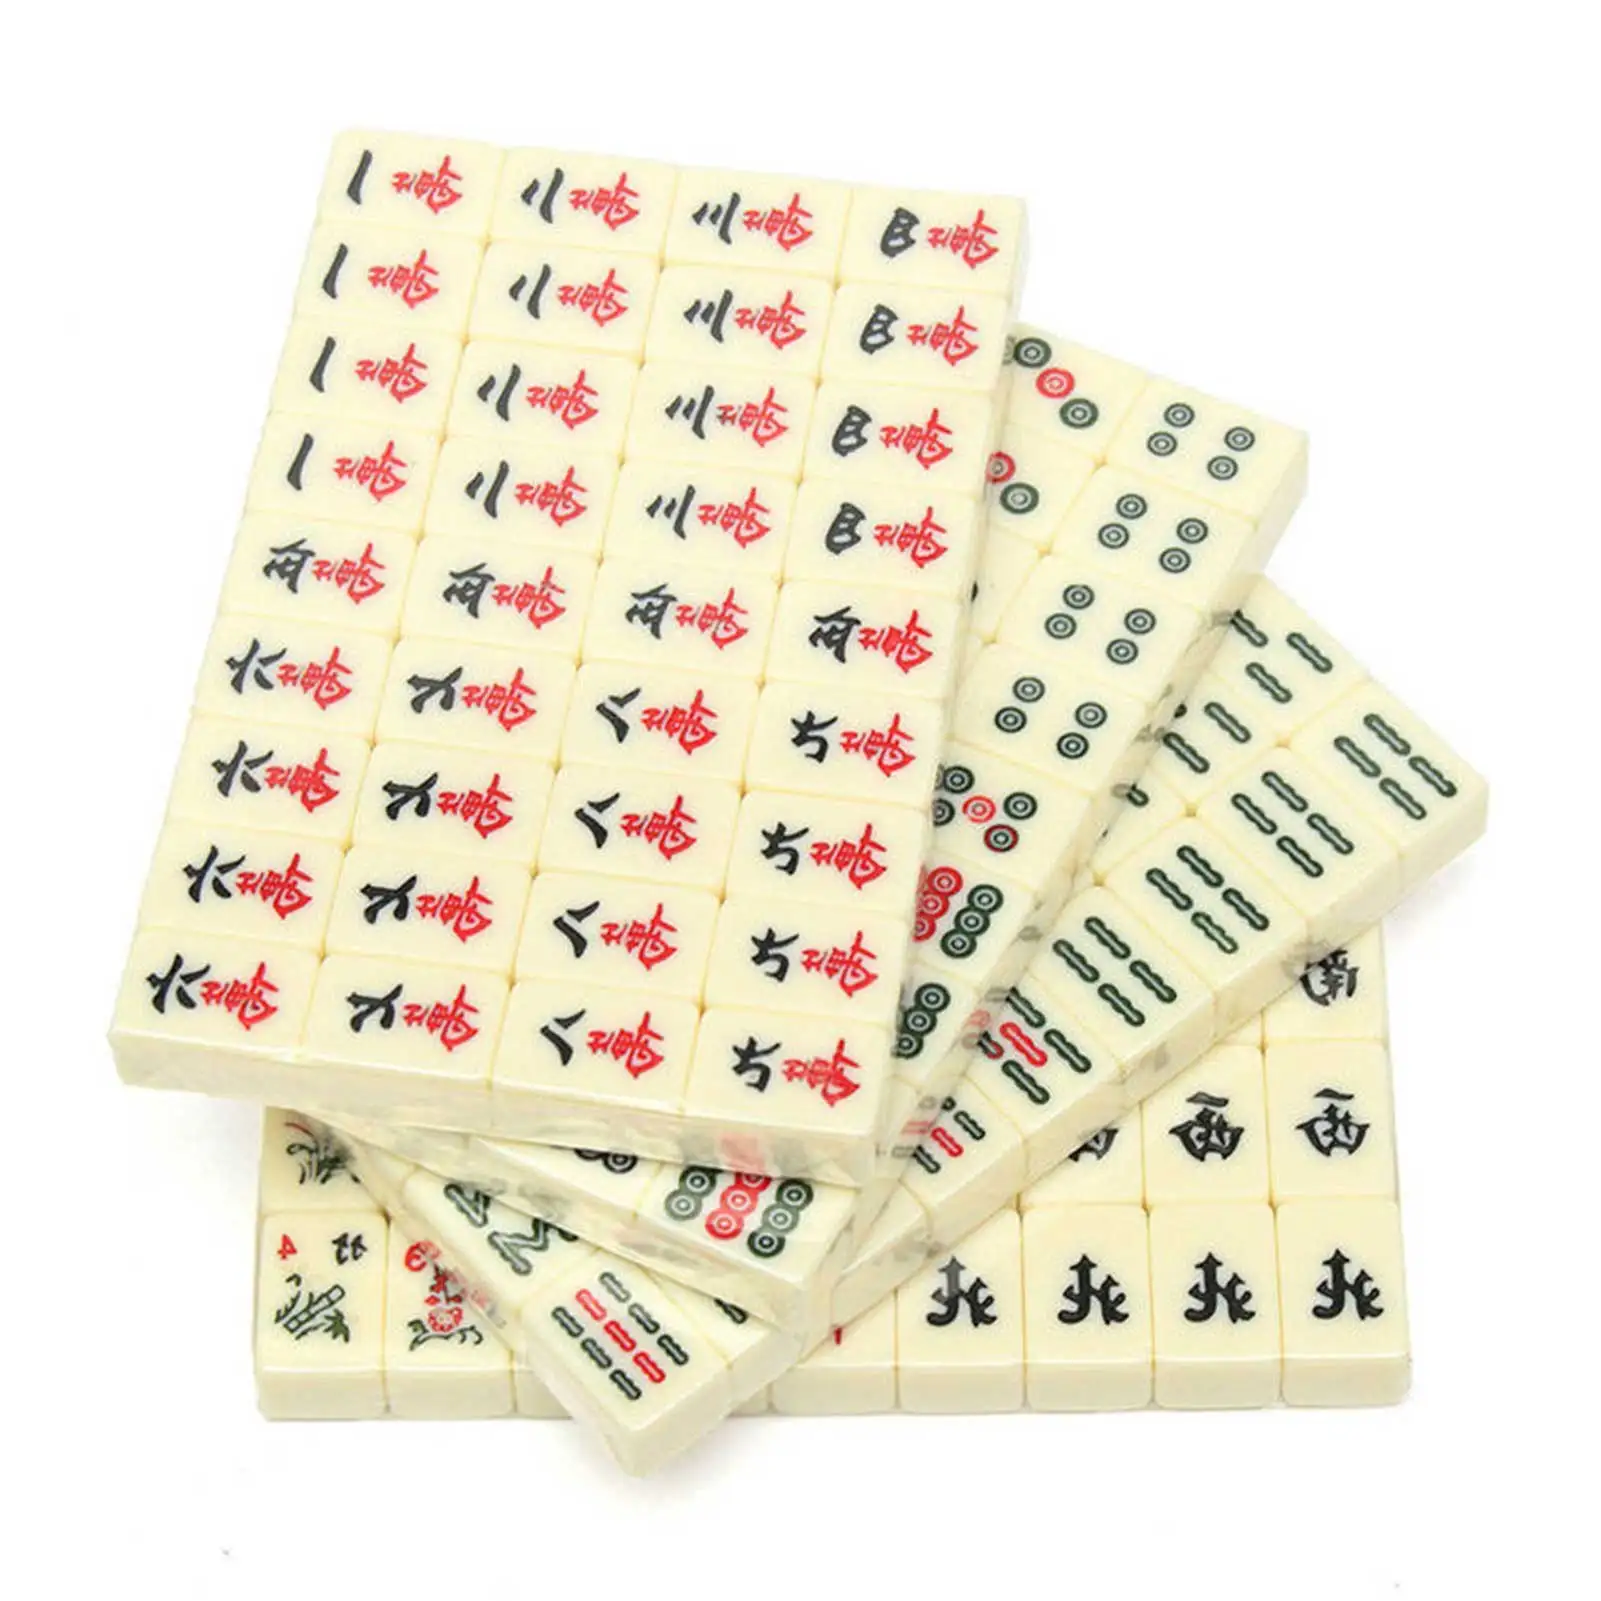 Loveinwinter Jeu de Mahjong Mahjong de Voyage Portable 144 pcs Mahjong avec Un étui en Cuir avec des Instructions en Anglais 